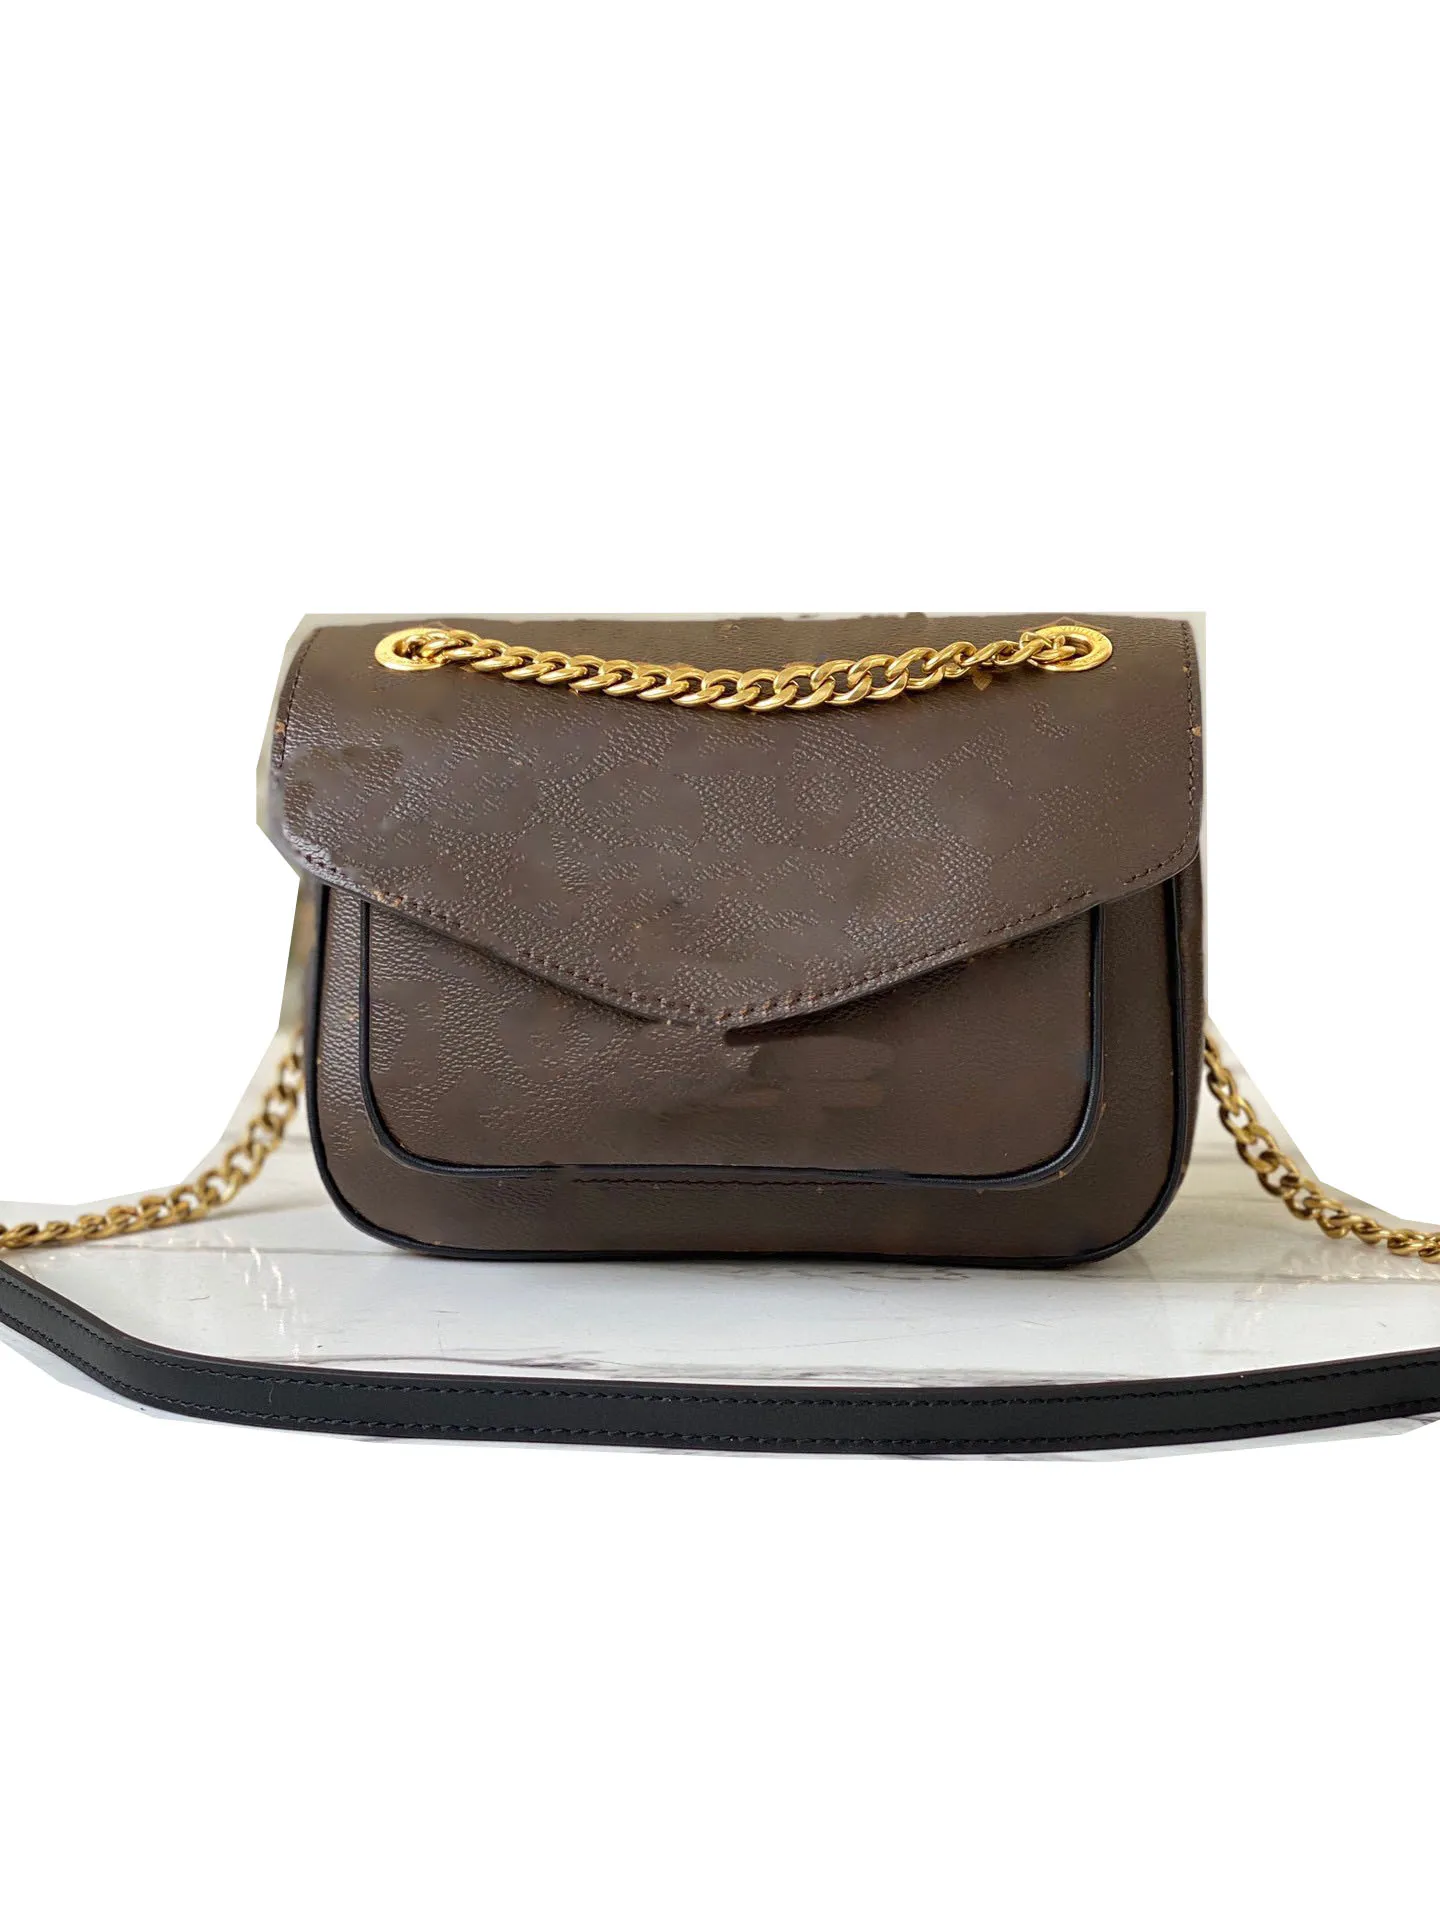 Дизайнерская роскошная модная классическая сумка, женская кожаная сумка, женская сумка через плечо в стиле ретро, сумка через плечо, сумки через плечо